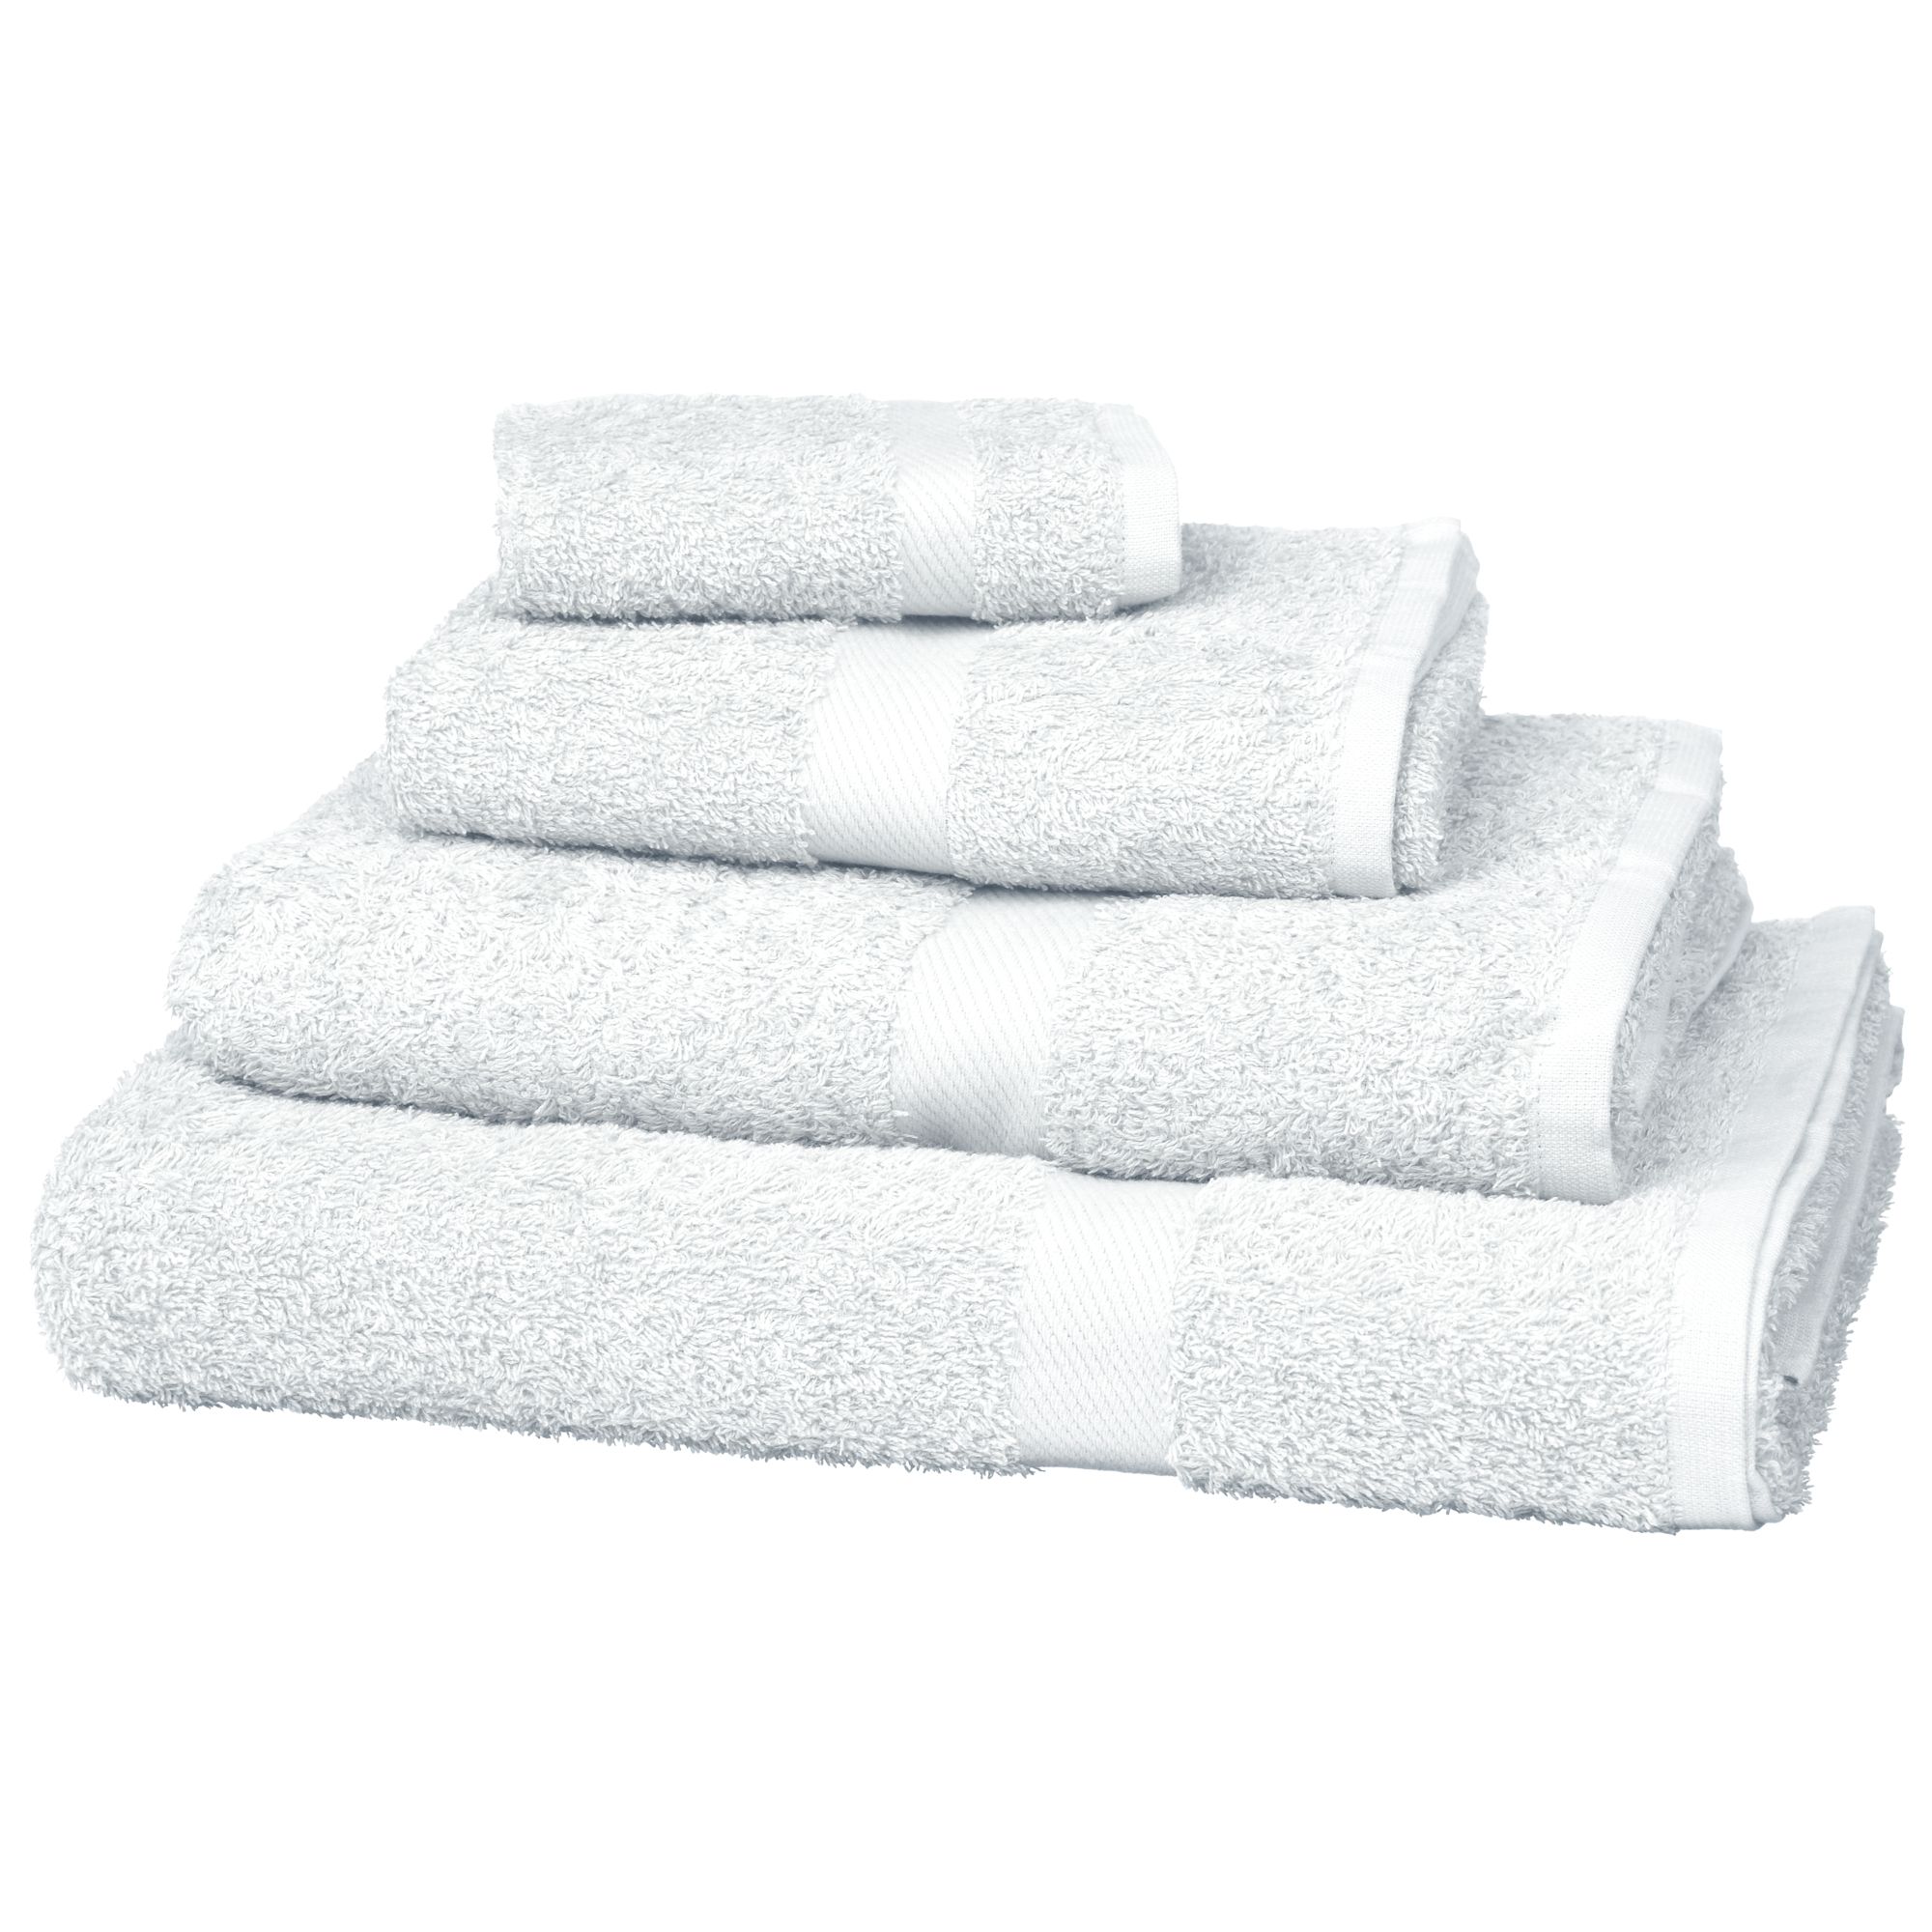 Value Cotton Towels, White 118302